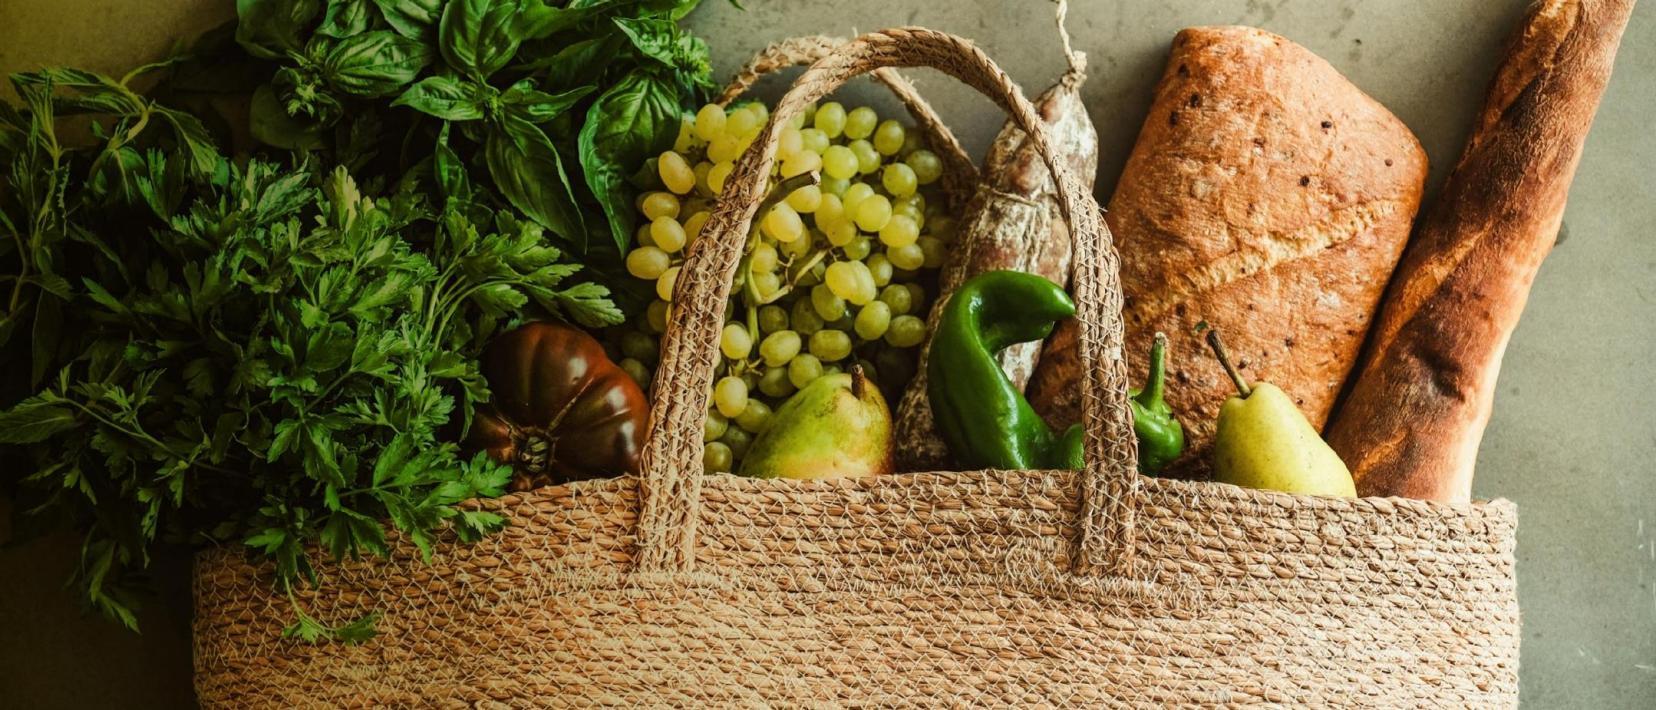 Eine Einkaufstausche aus Naturmaterial, gefüllt mit frischen Kräutern, Gemüse, Früchten und Brot. 